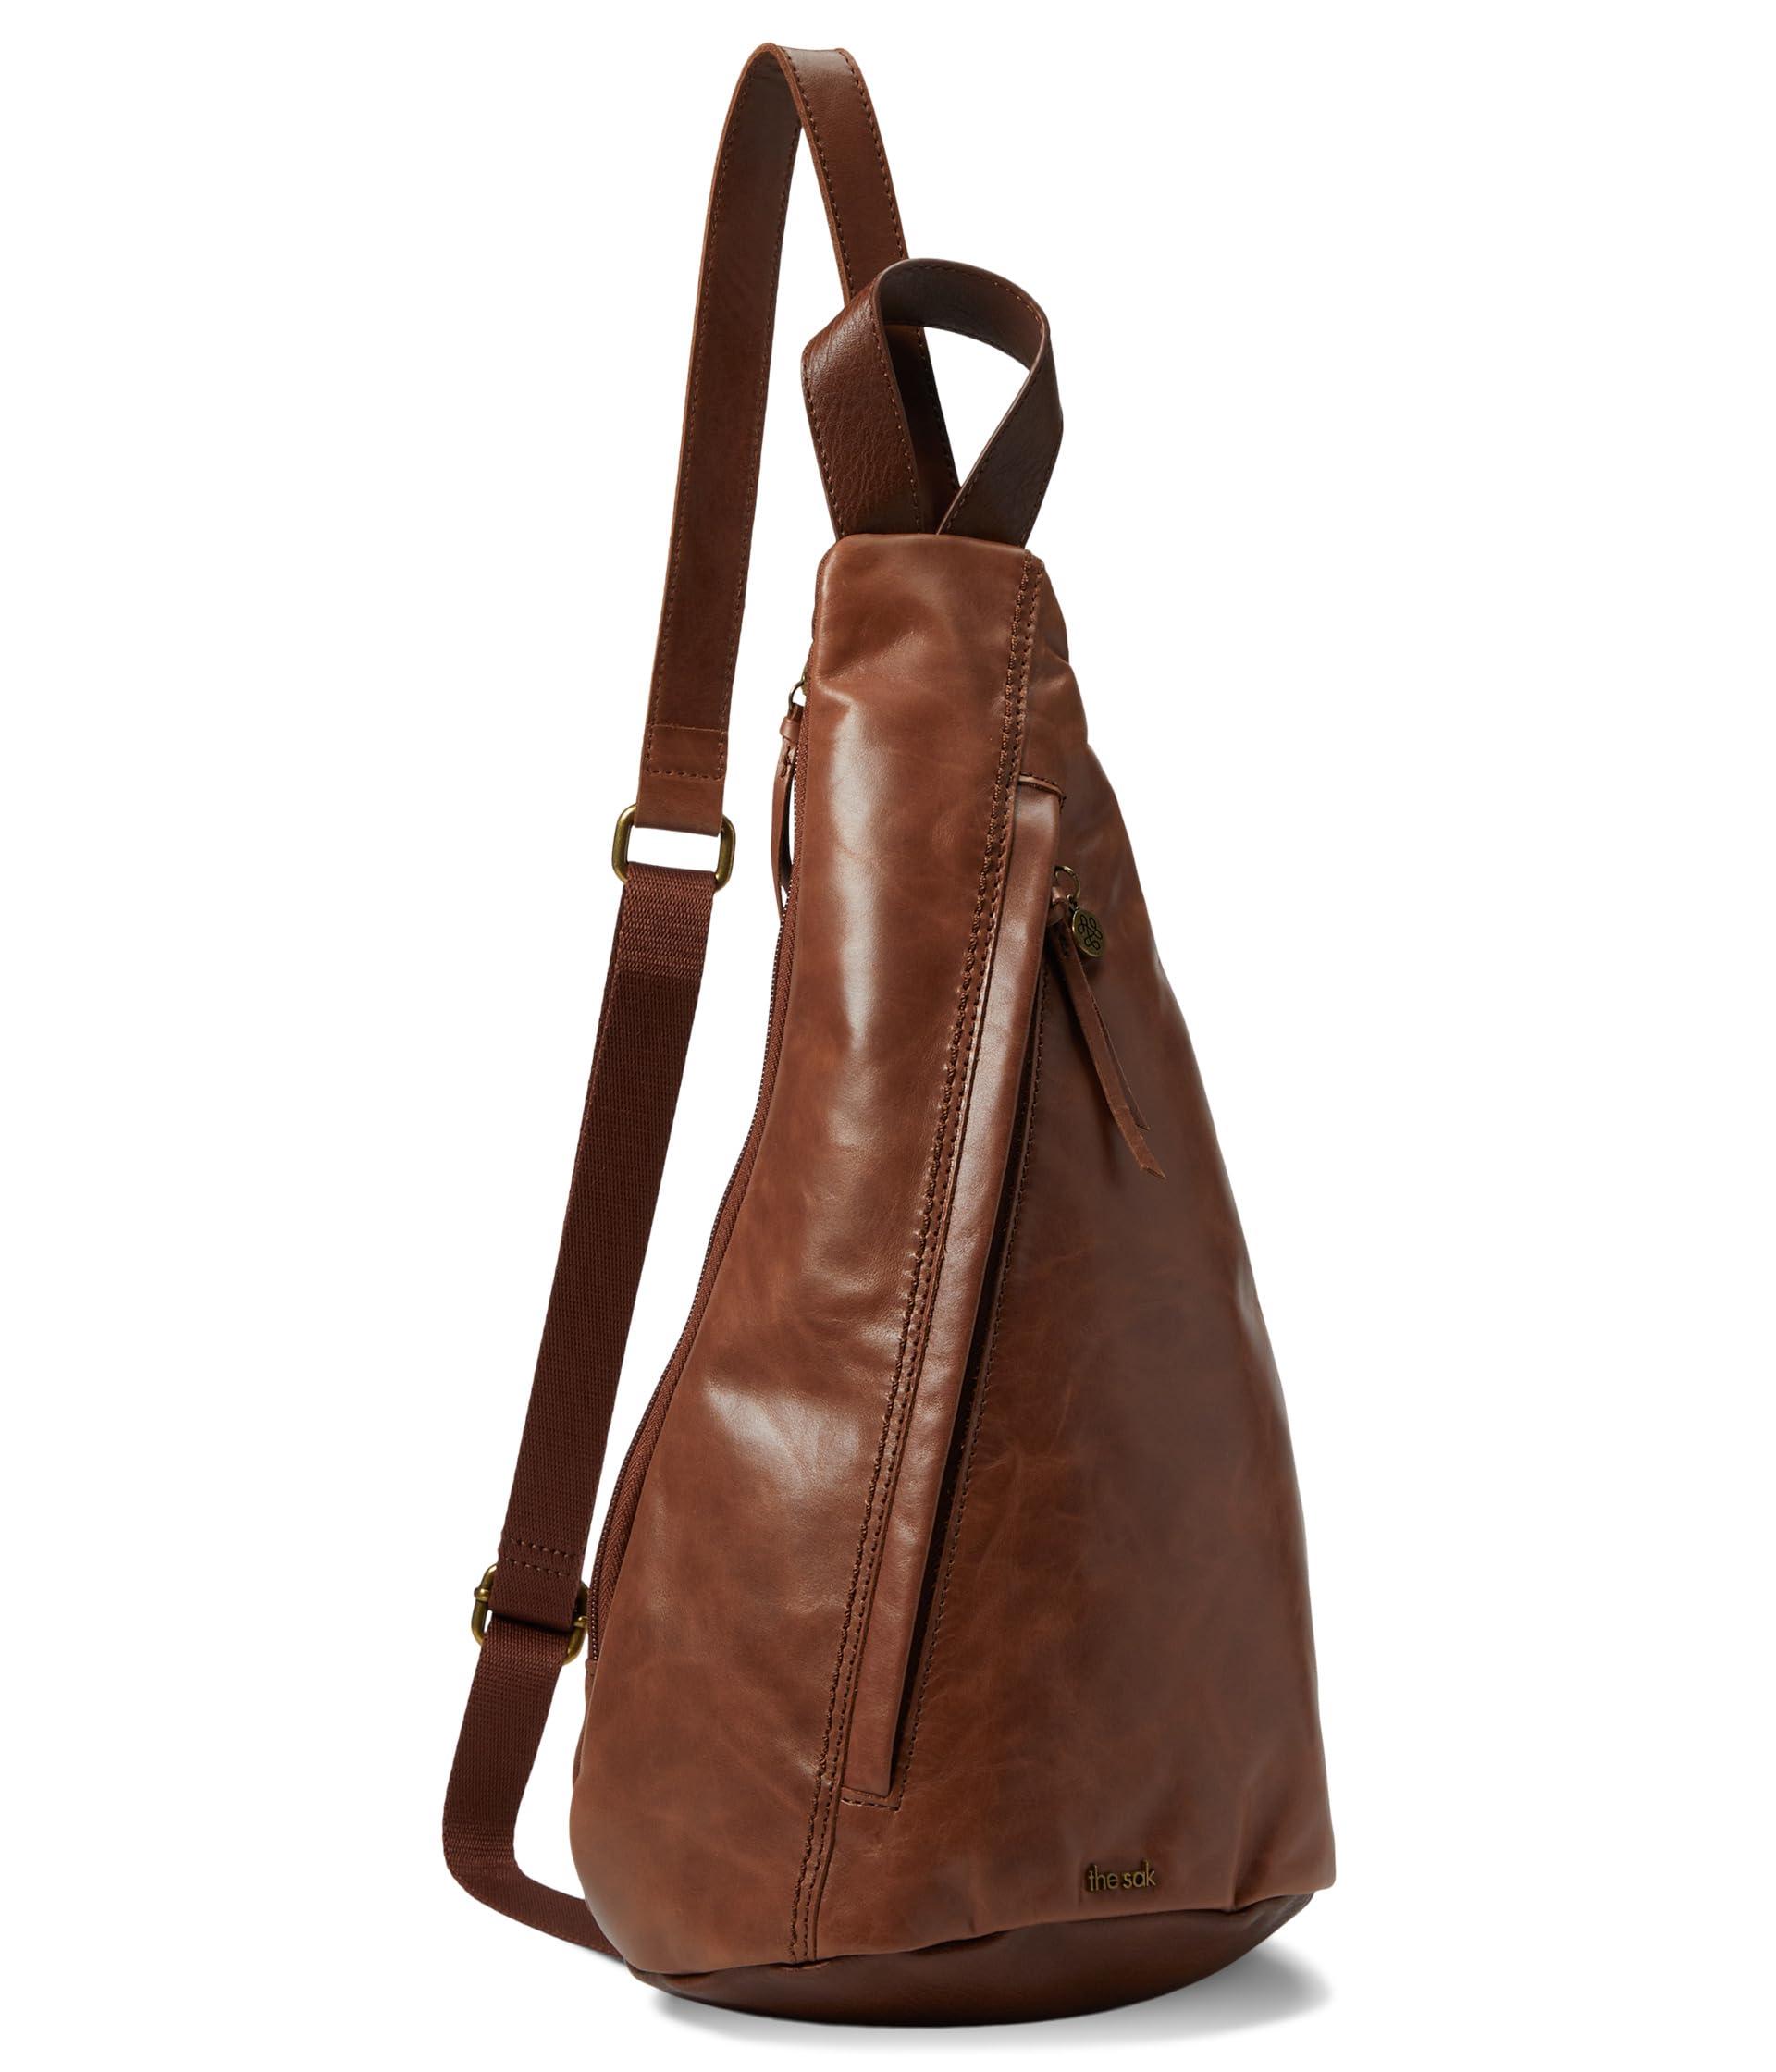 The sak backpack purse - Gem